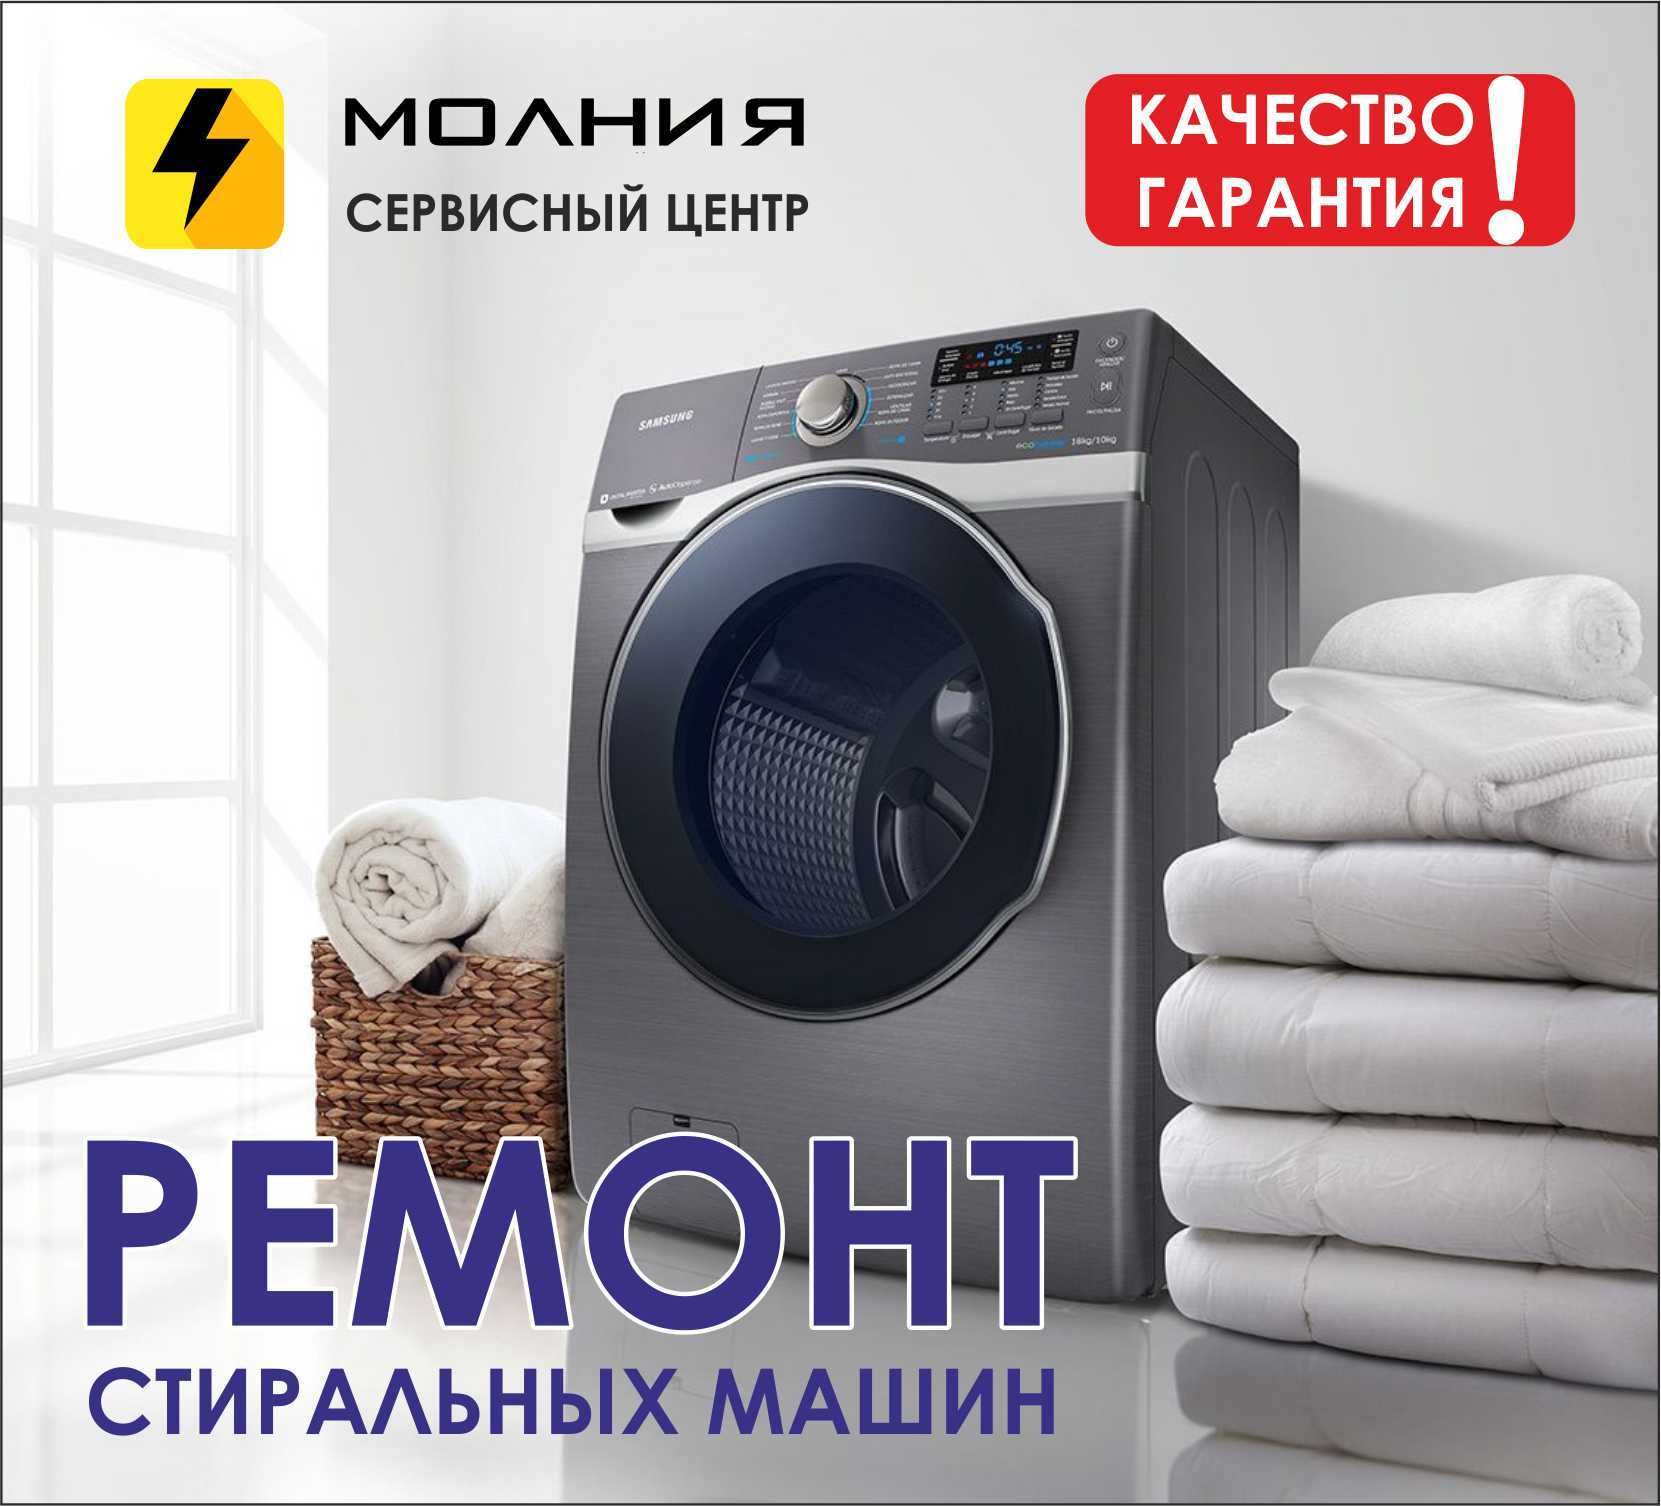 Ремонт стиральных машин "МОЛНИЯ" - molnya.service